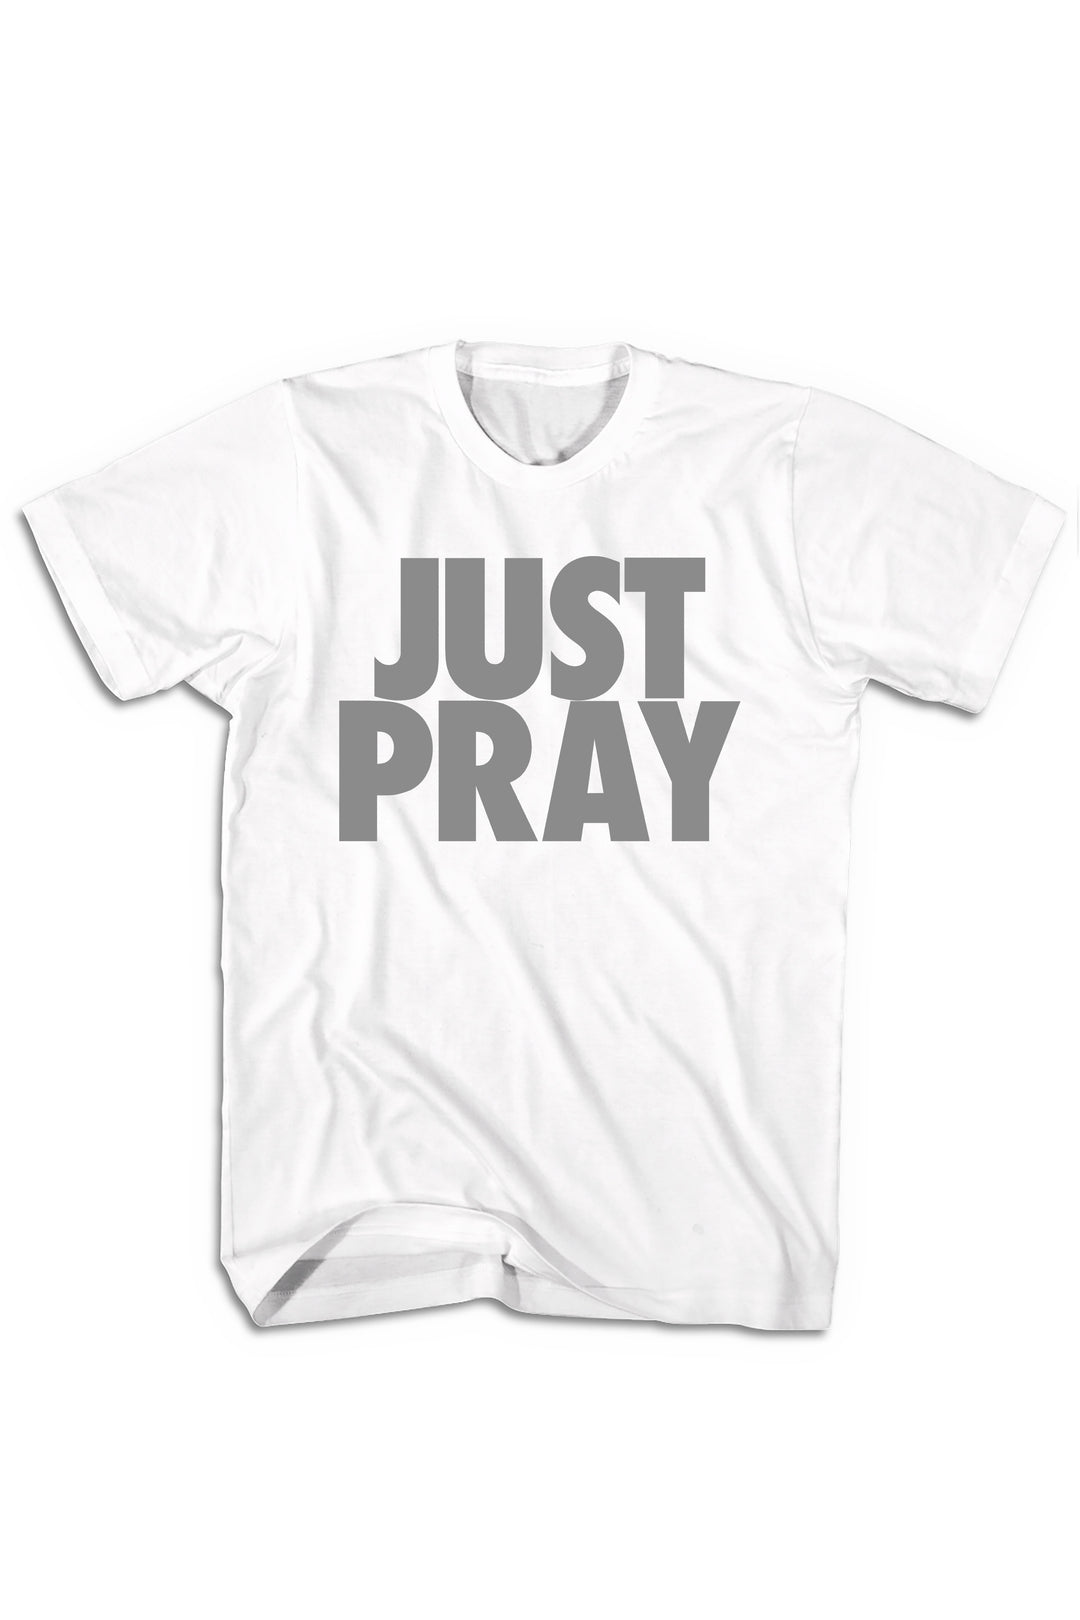 Just Pray Tee (Gray Logo) - Zamage